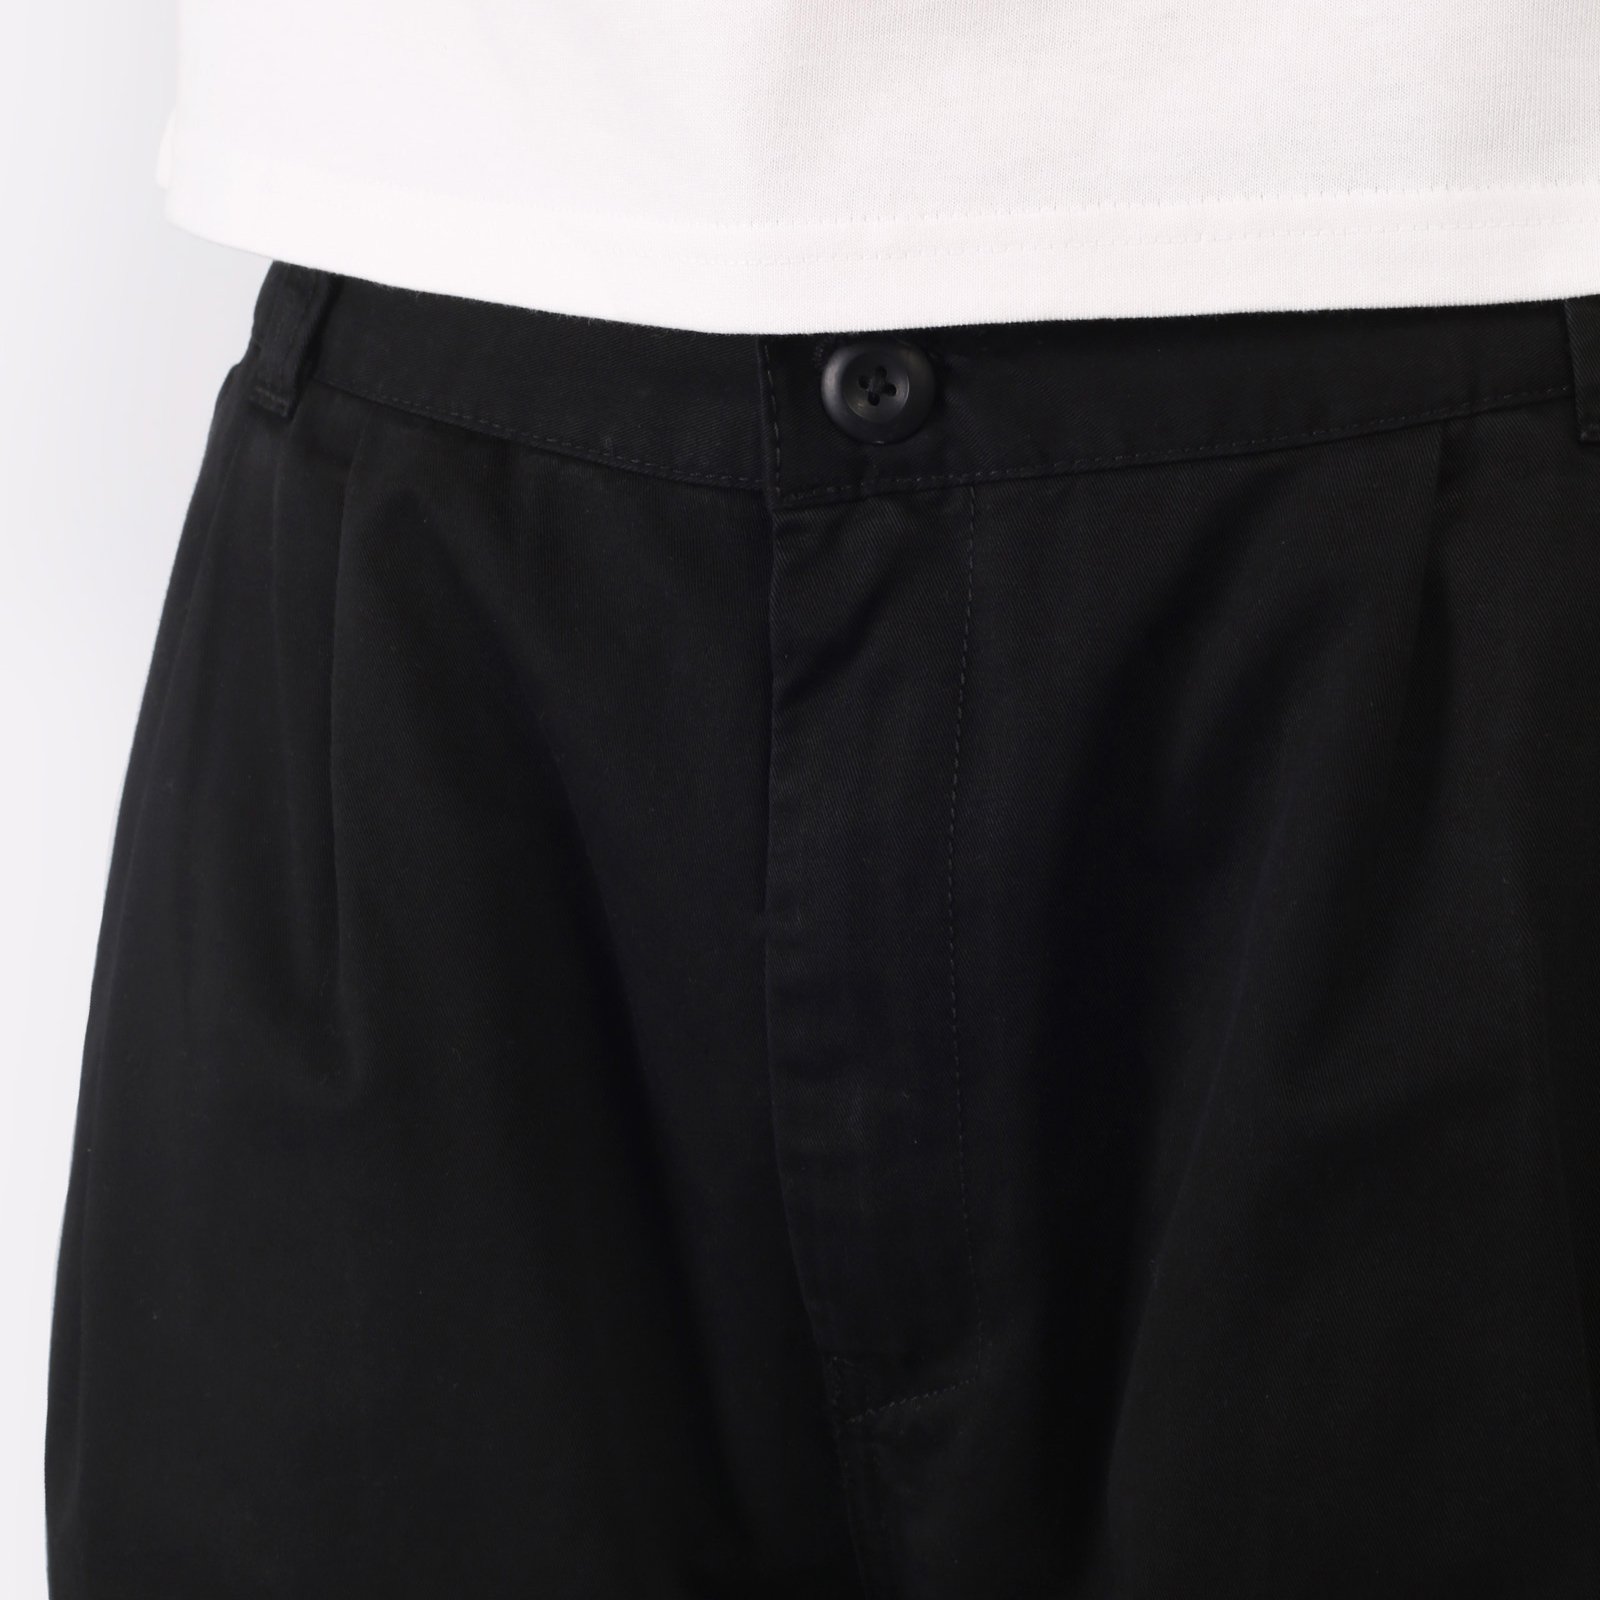 мужские брюки Carhartt WIP Marv Pant  (I033129-black)  - цена, описание, фото 4